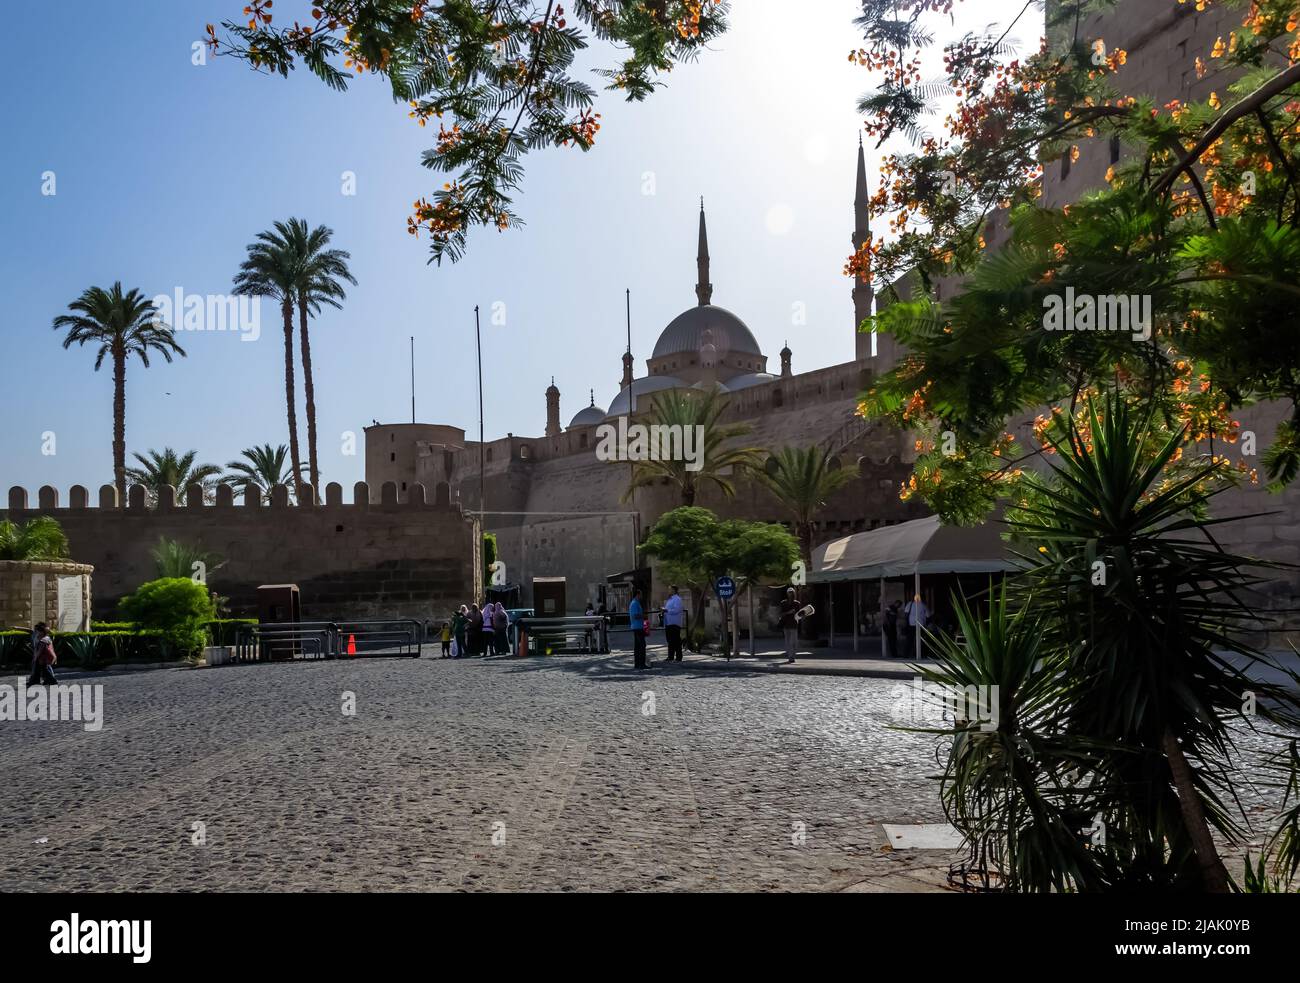 Dettagli architettonici della grande moschea di Muhammad Ali Pasha (moschea dell'Alabastro) al Cairo, Egitto Foto Stock